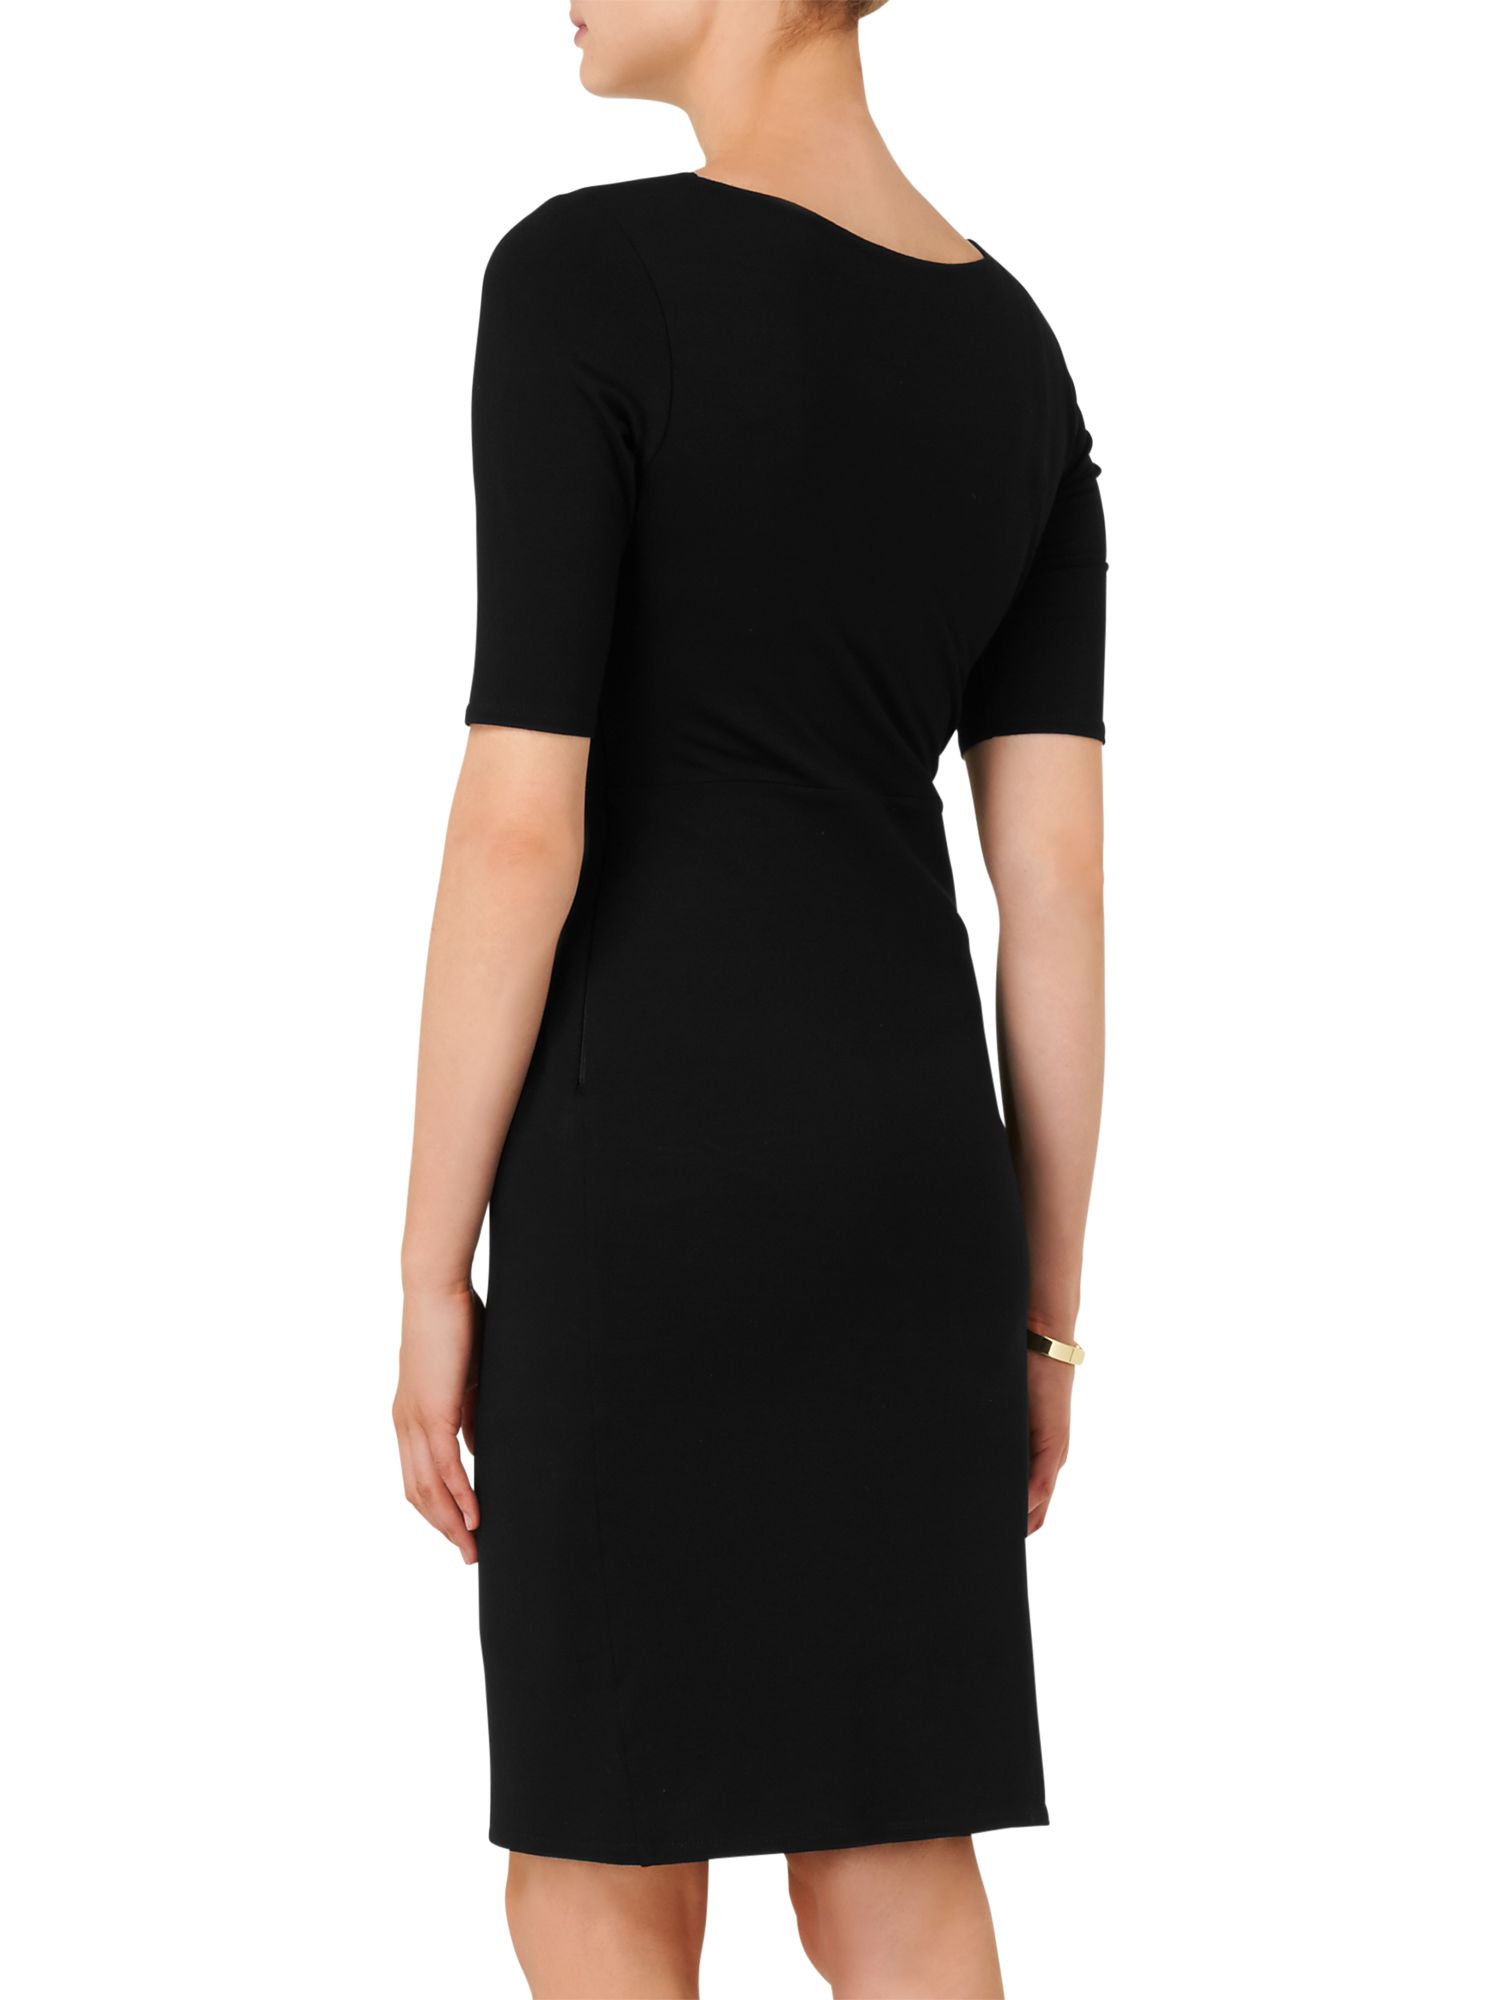 Phase Eight Sinita Dress, Black at John Lewis & Partners